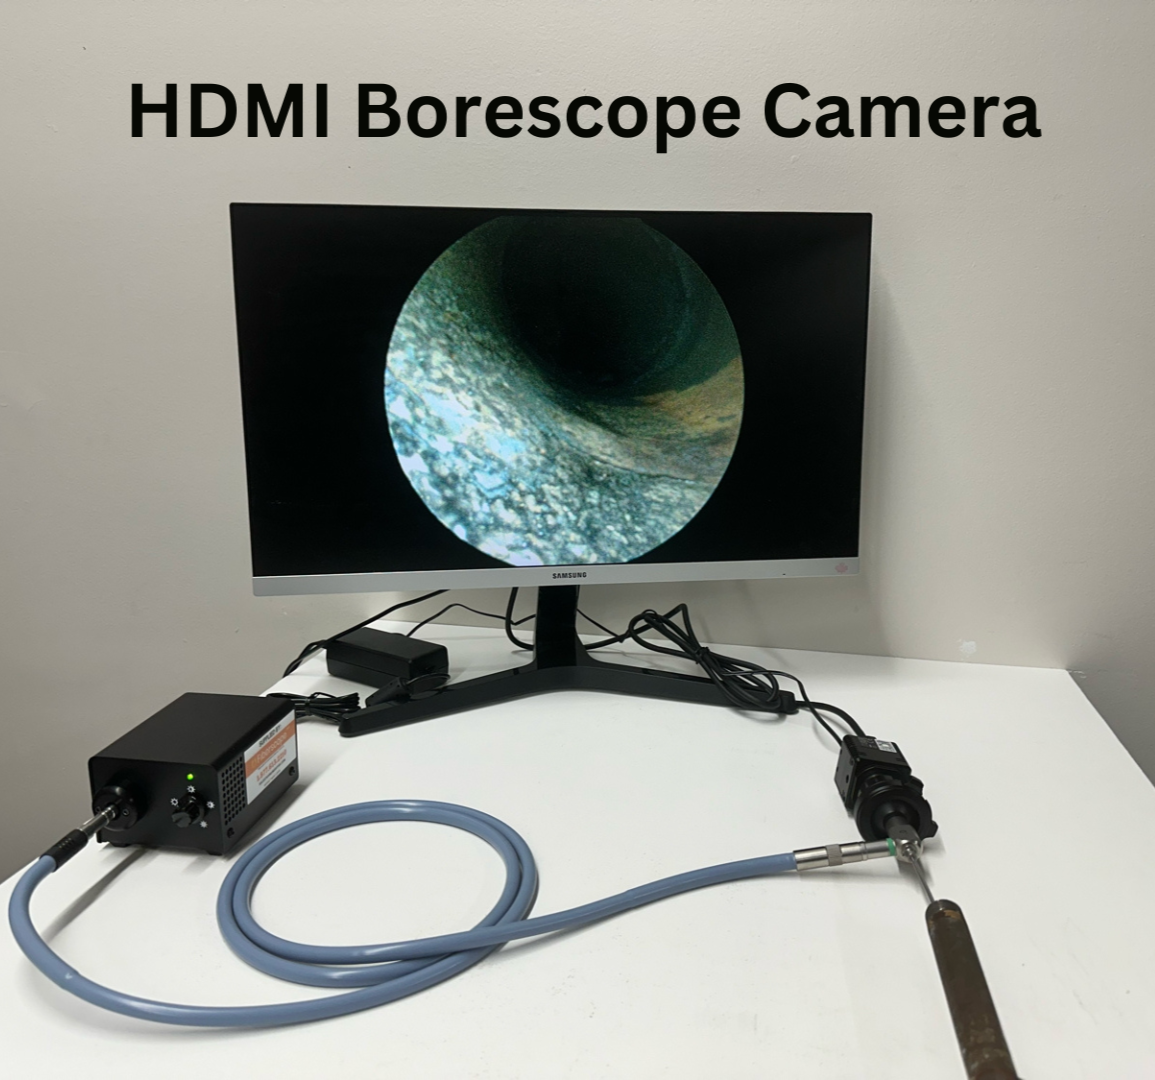 HDMI Borescope Camera Setup